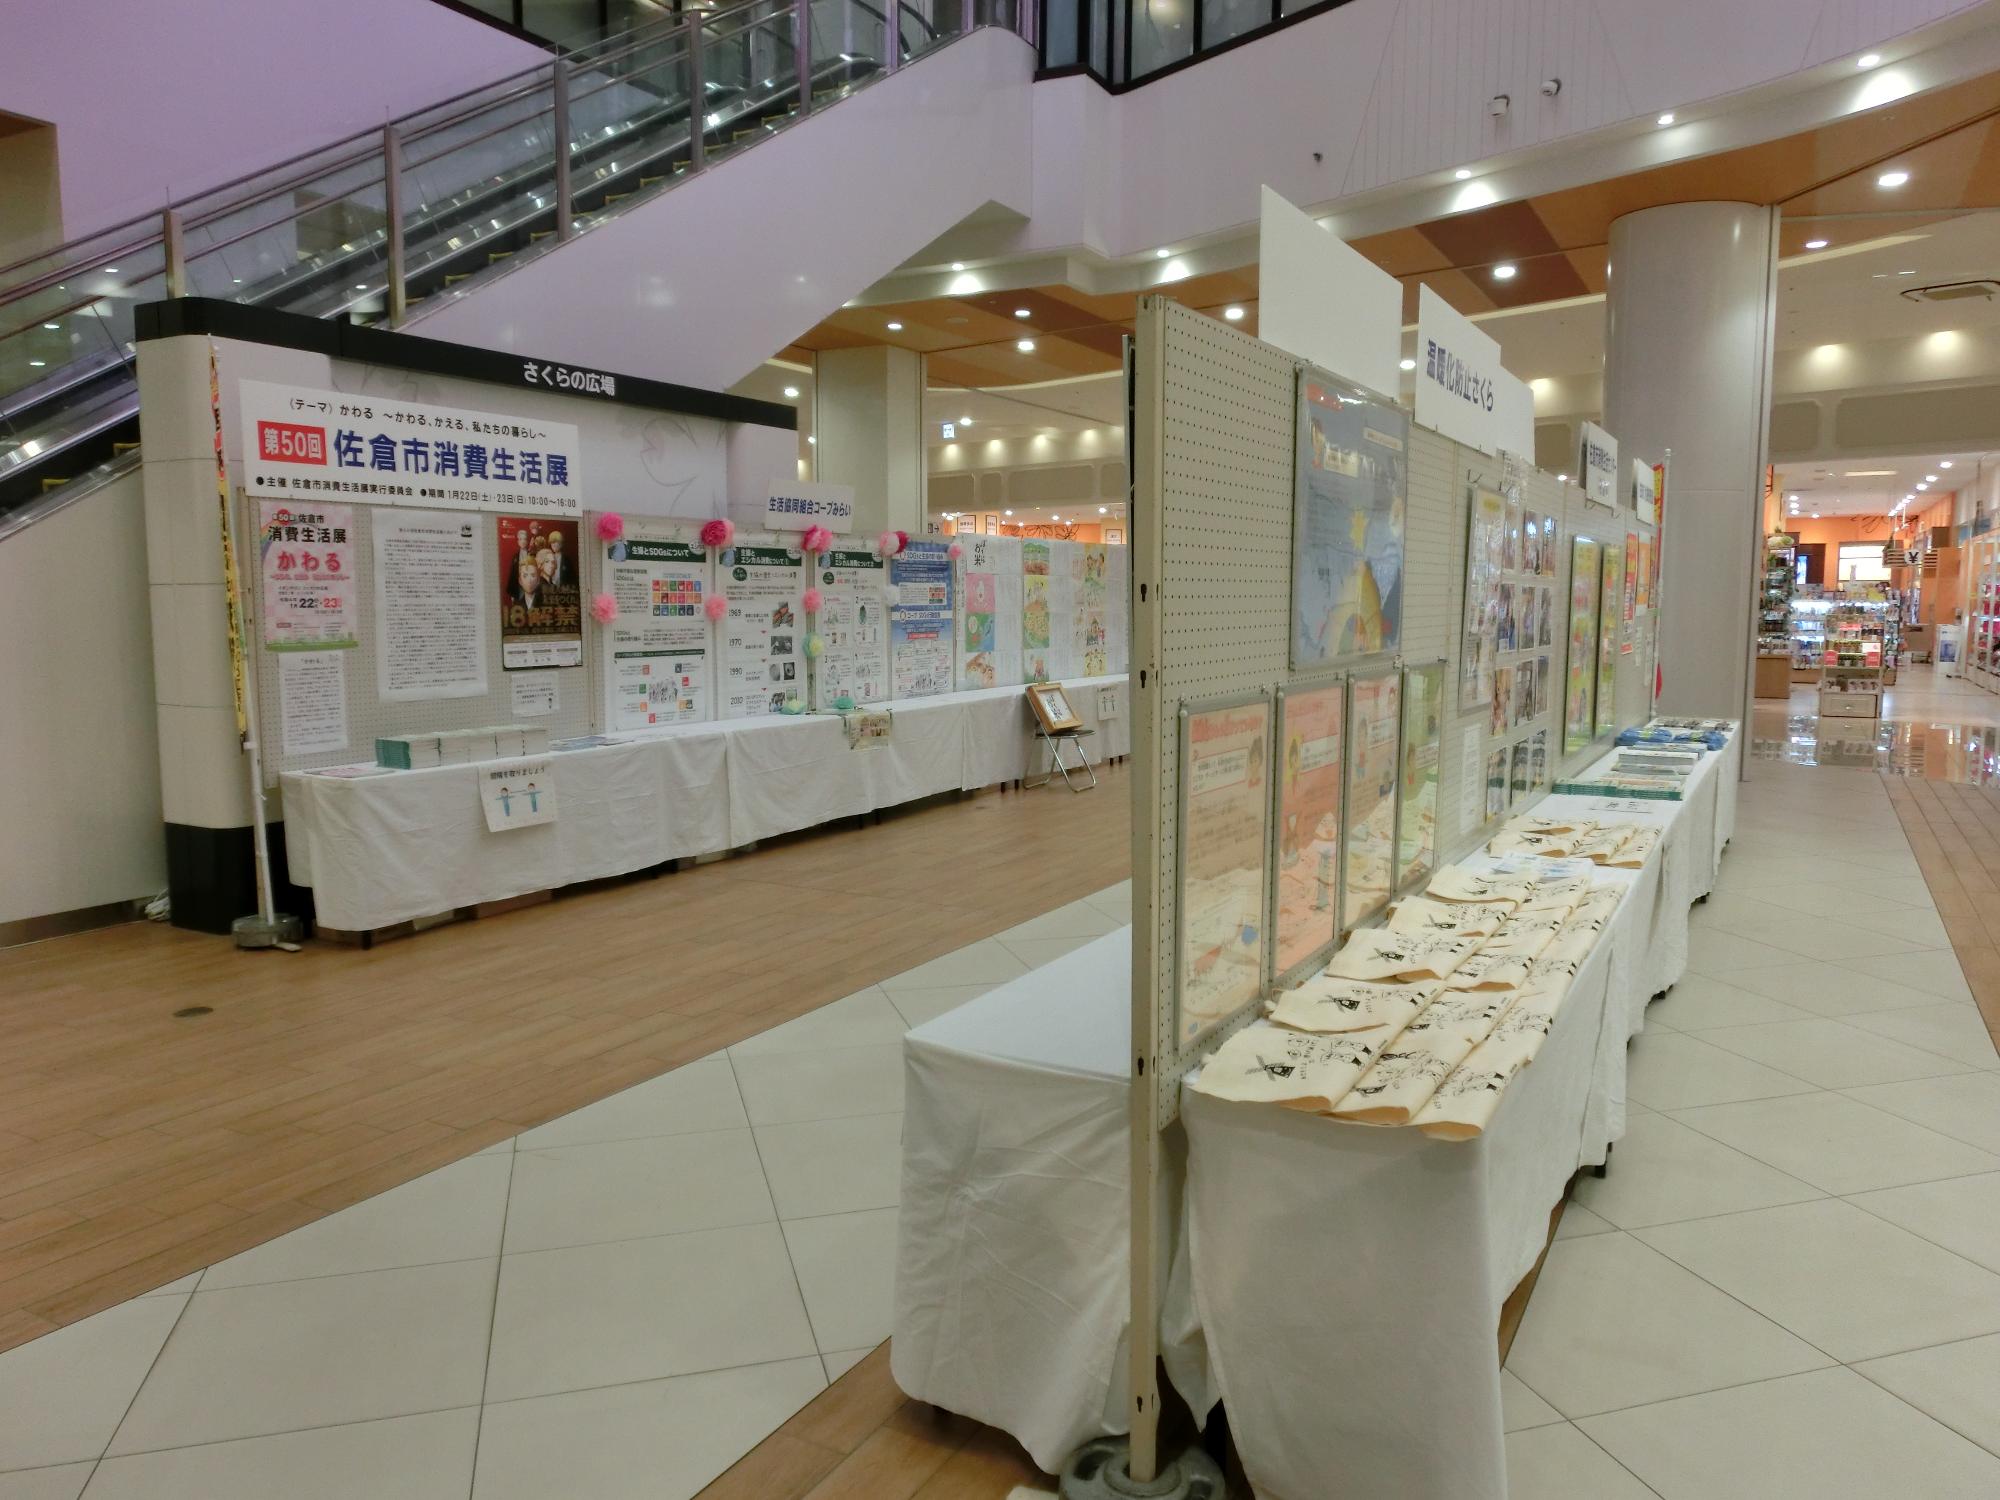 テーマごとに色々なパネルや品物が展示されている第50回佐倉市消費生活展会場内の写真